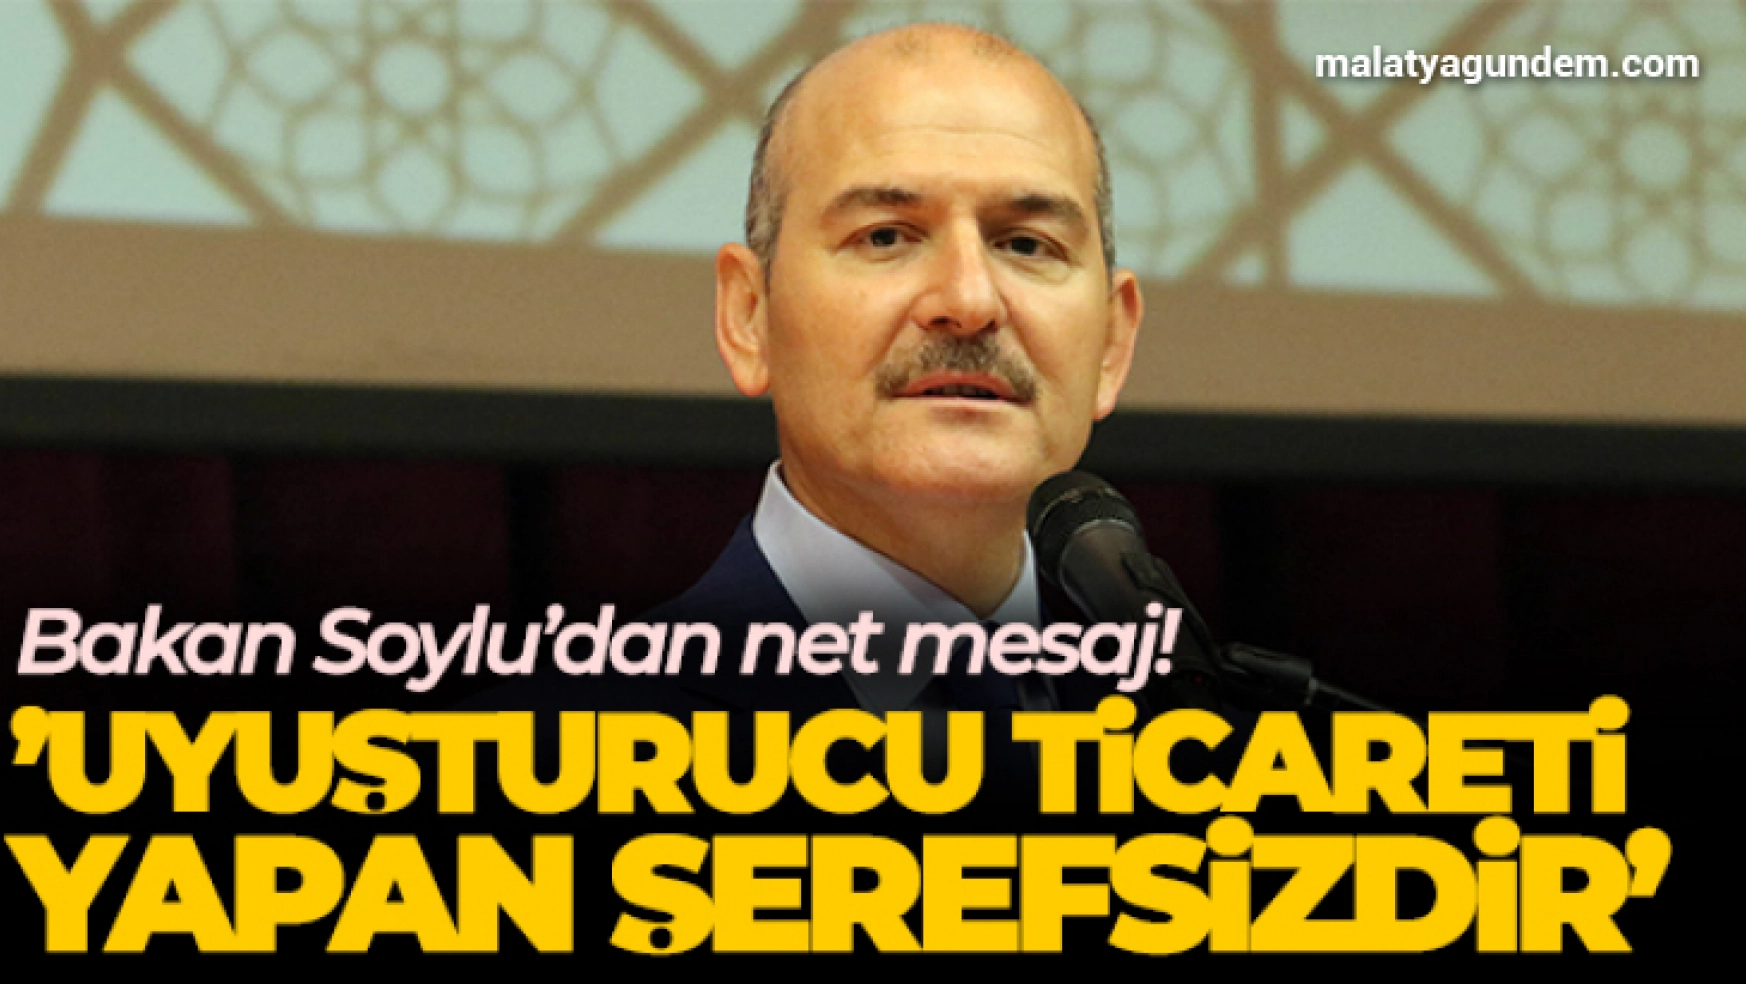 Bakan Soylu: 'Uyuşturucu ticareti yapan şerefsizdir, ispat etmeyen Kılıçdaroğlu da şerefsizdir'